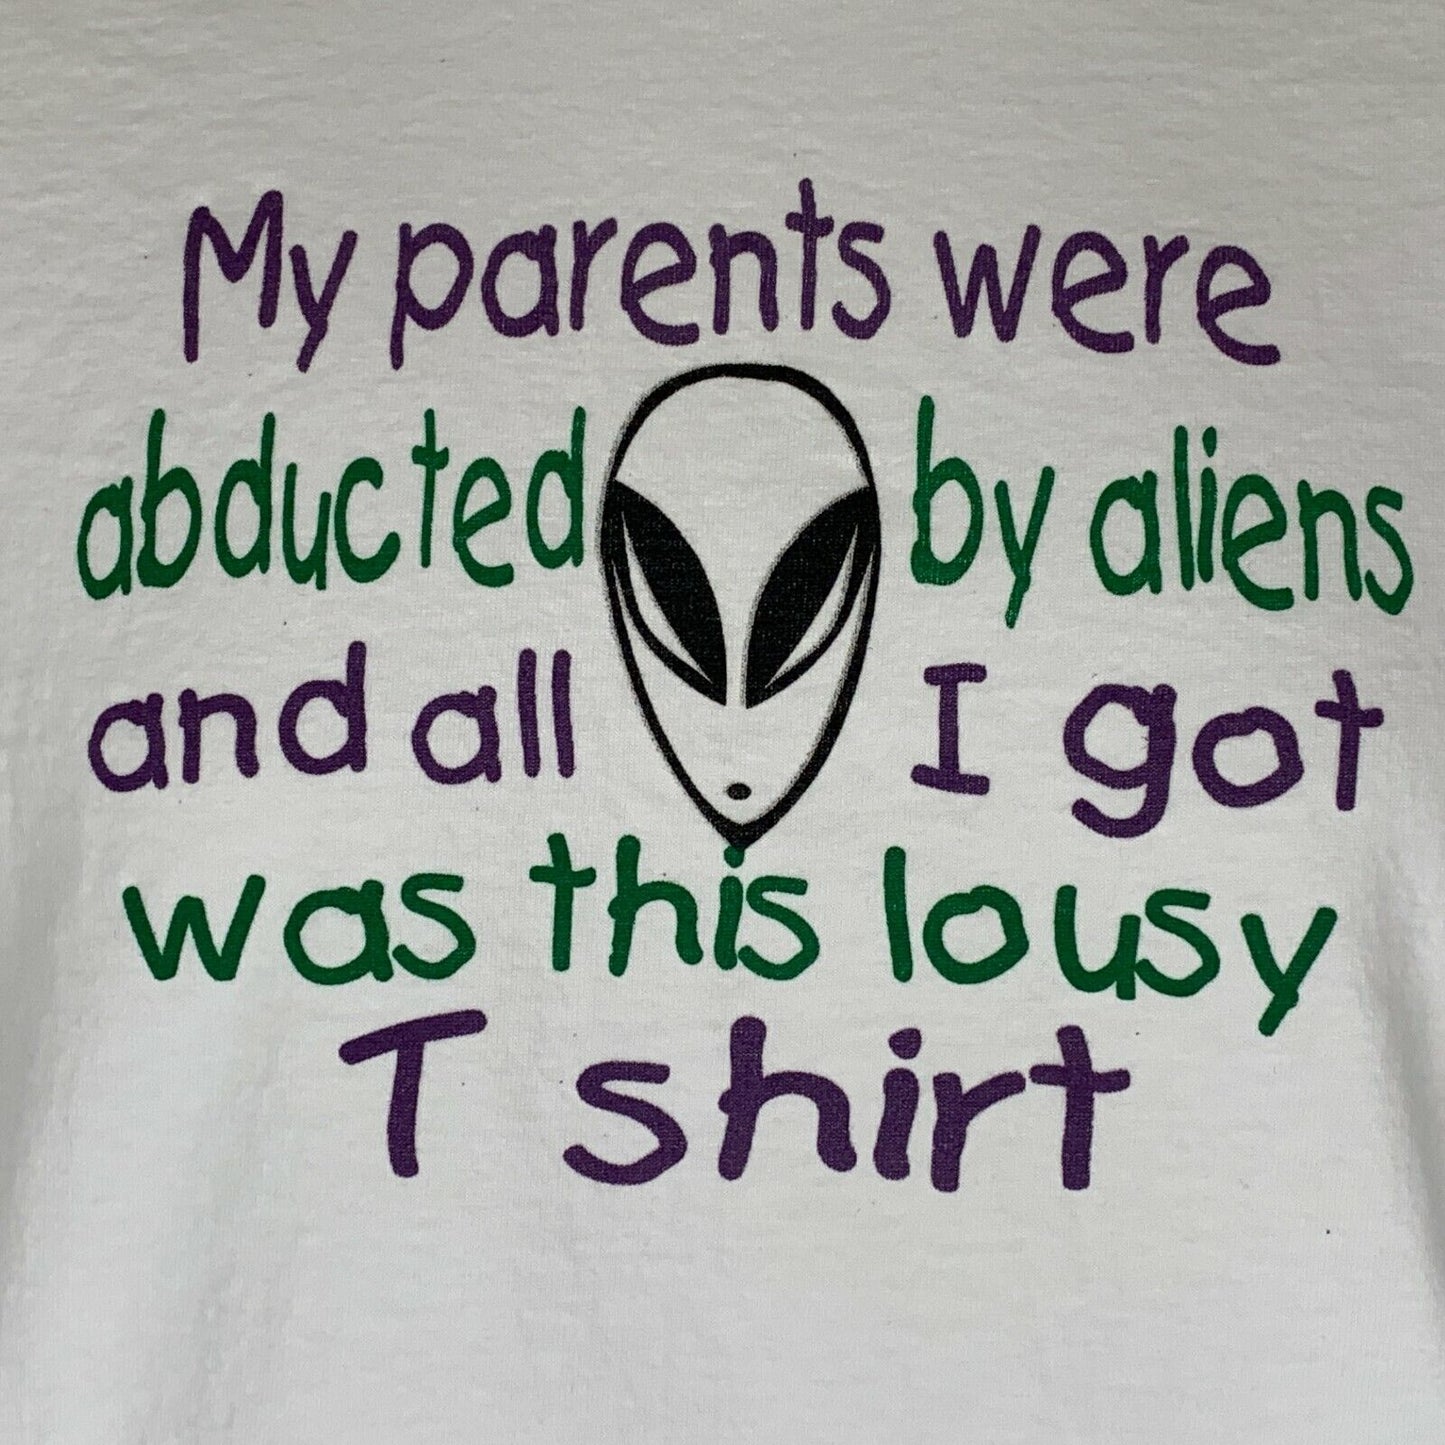 我的父母被外星人绑架了 90 年代复古 T 恤美国制造青年 XL